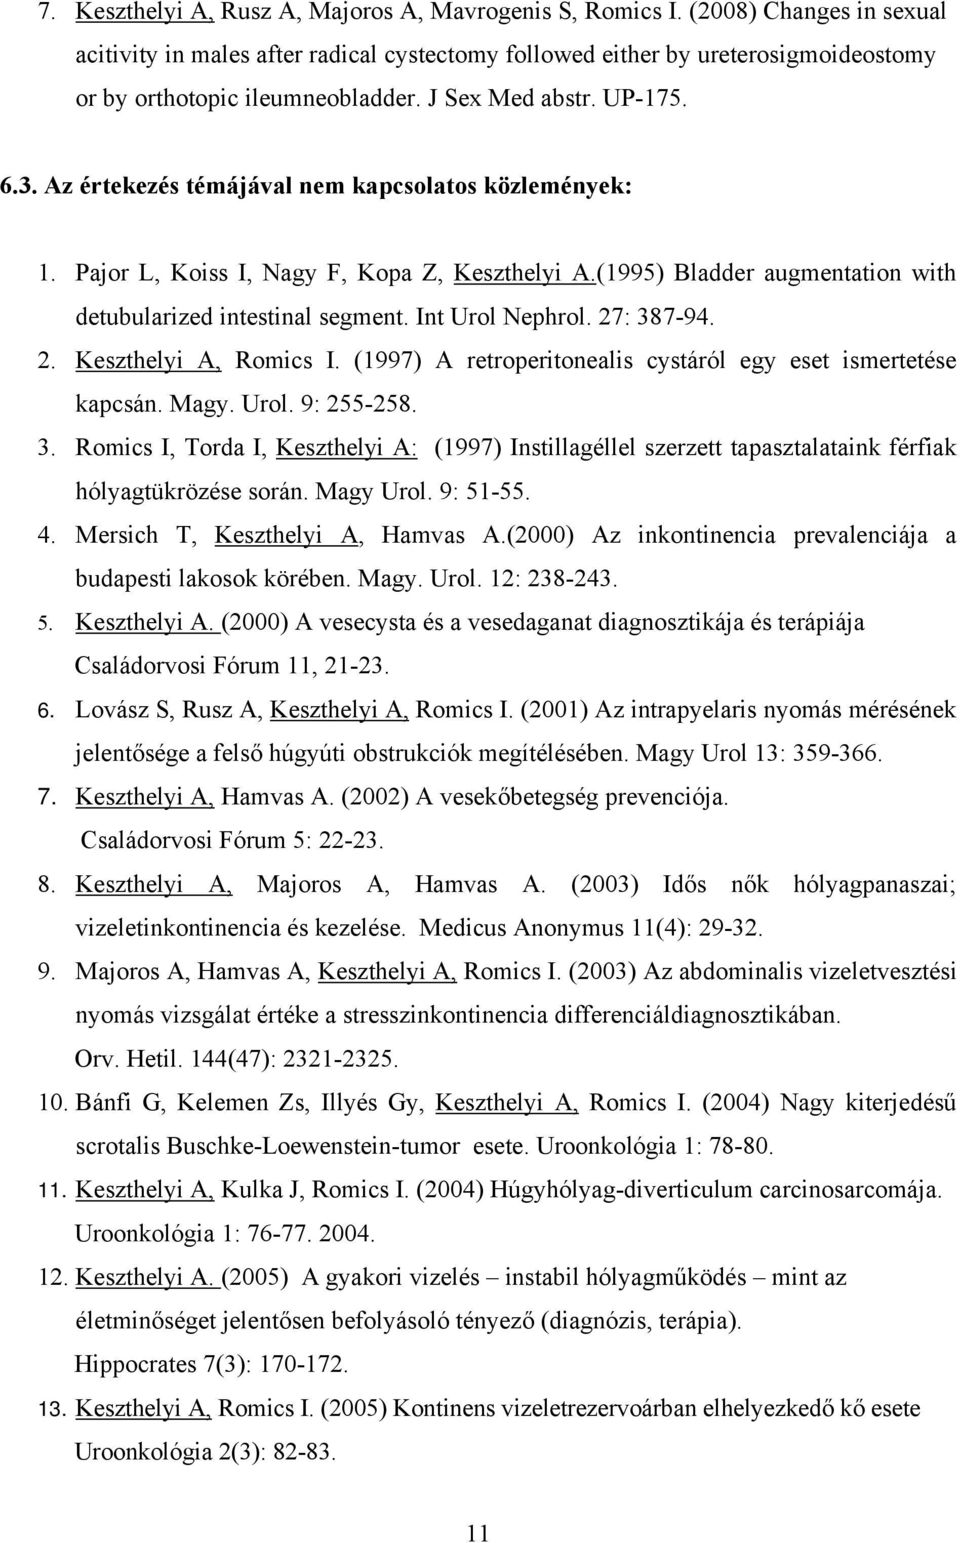 Az értekezés témájával nem kapcsolatos közlemények: 1. Pajor L, Koiss I, Nagy F, Kopa Z, Keszthelyi A.(1995) Bladder augmentation with detubularized intestinal segment. Int Urol Nephrol. 27: 387-94.